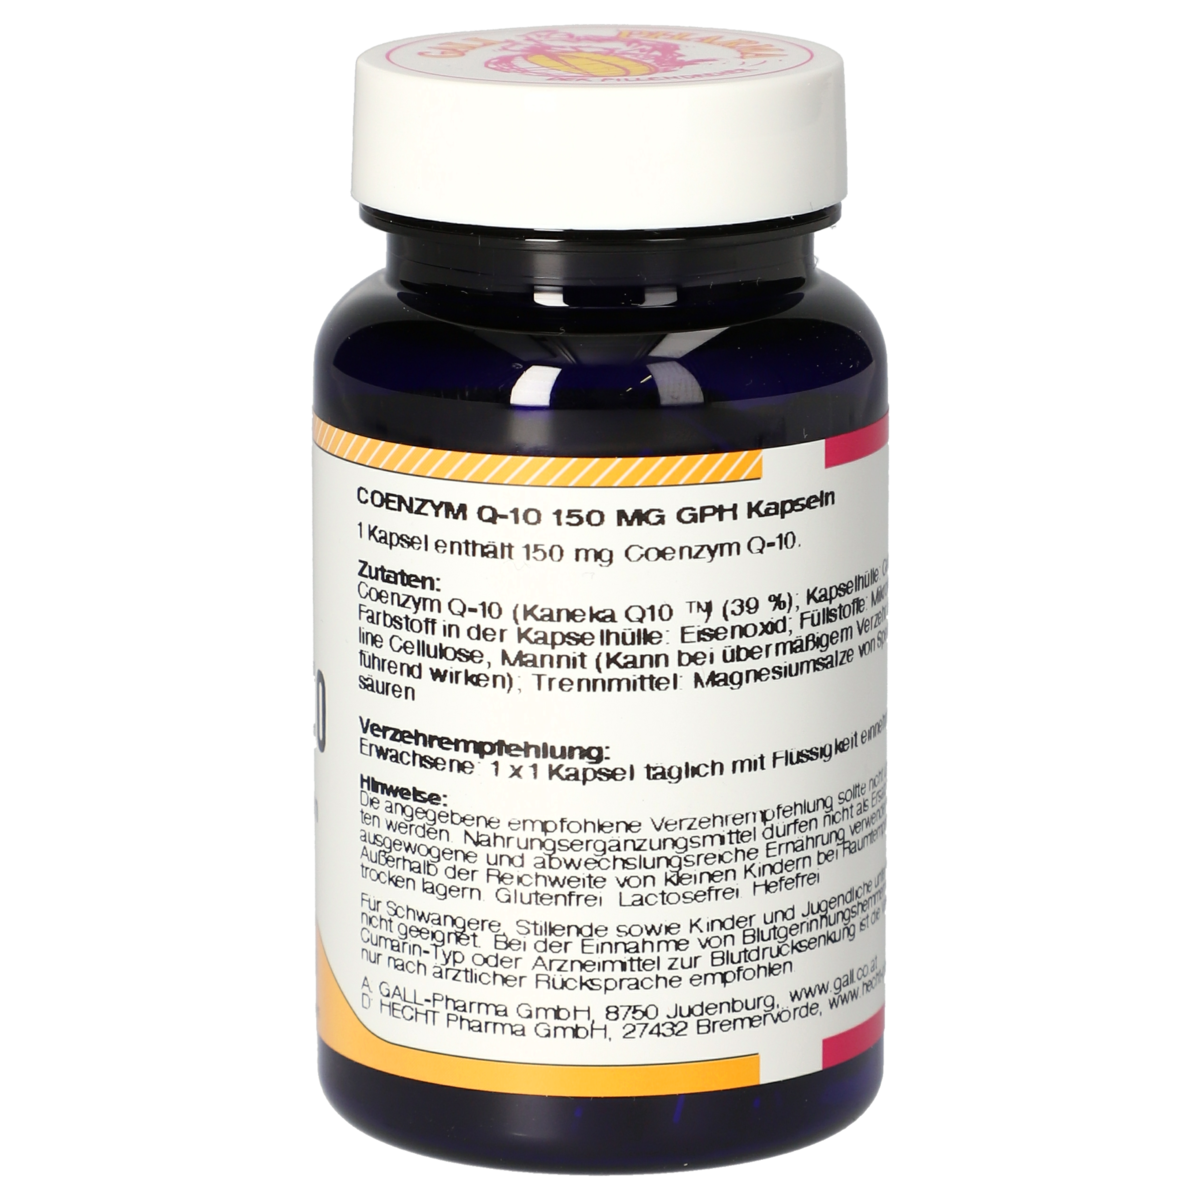 Q-10 60 mg GPH Capsules [3991592]-Gall-Pharma GmbH-Online-Shop